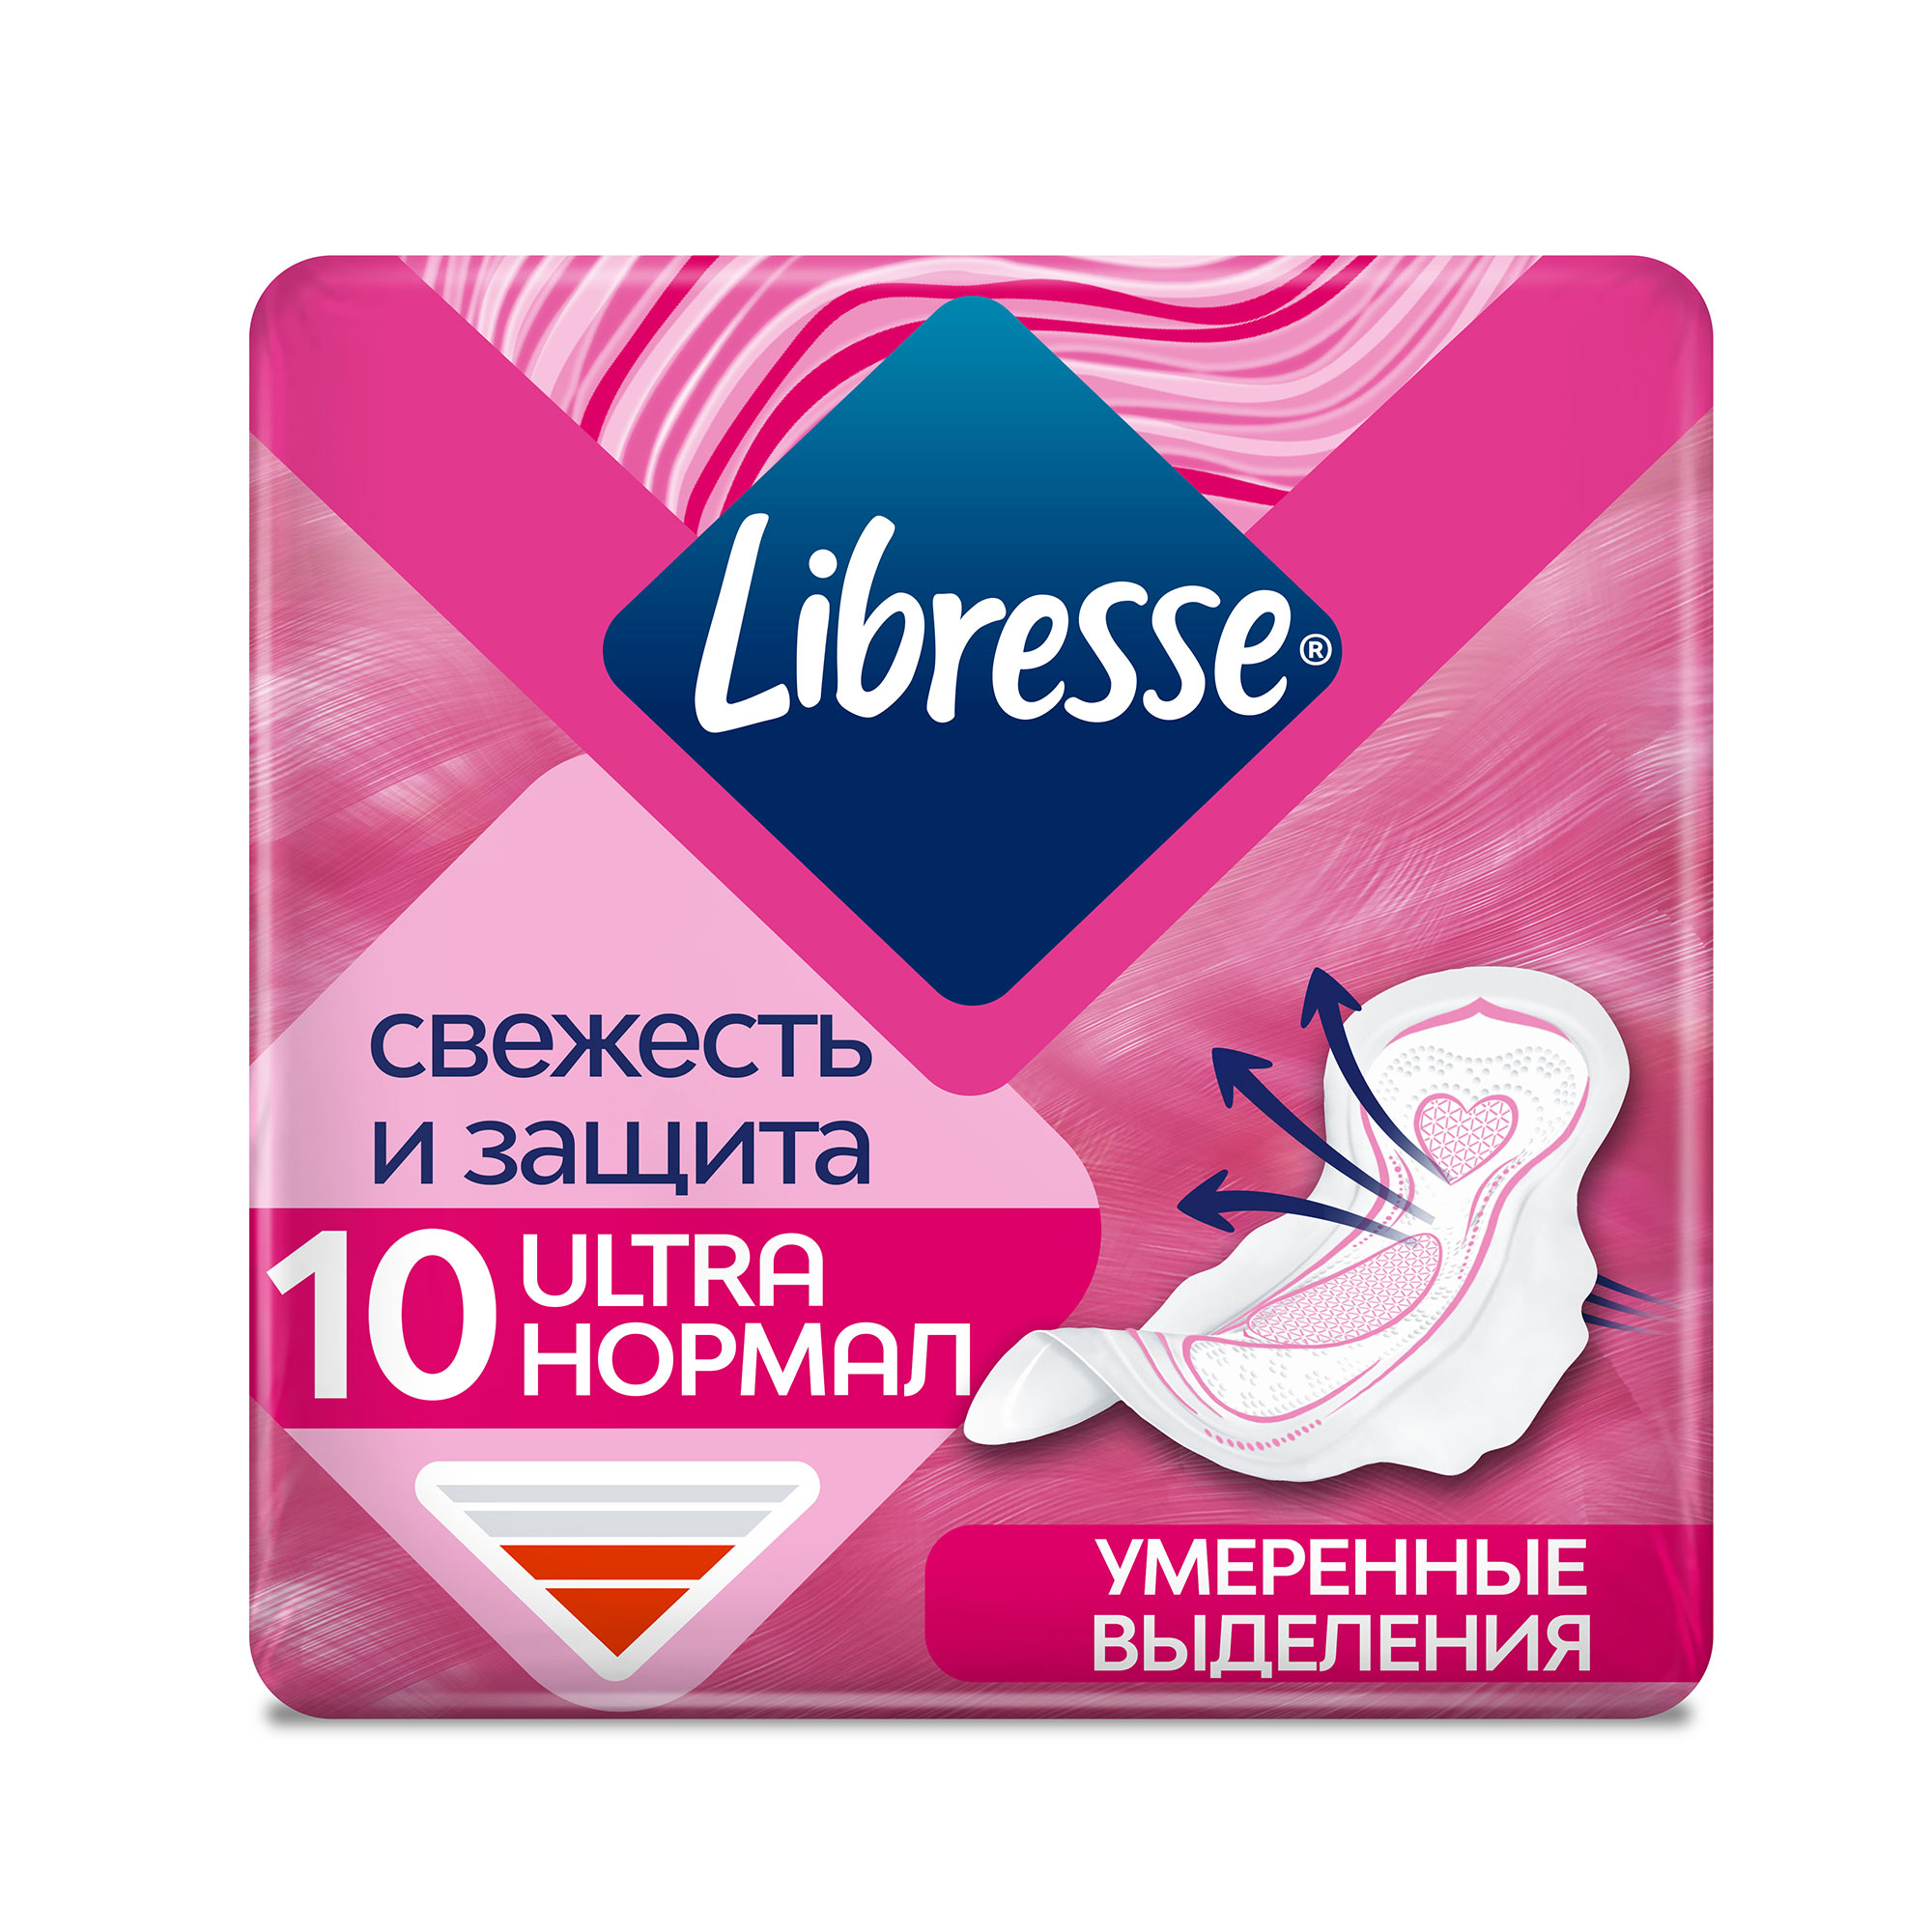 Гигиенические прокладки Libresse Ultra с мягкой поверхностью, 10 шт. прокладки с мягкой поверхностью normal ultra libresse либресс 10шт